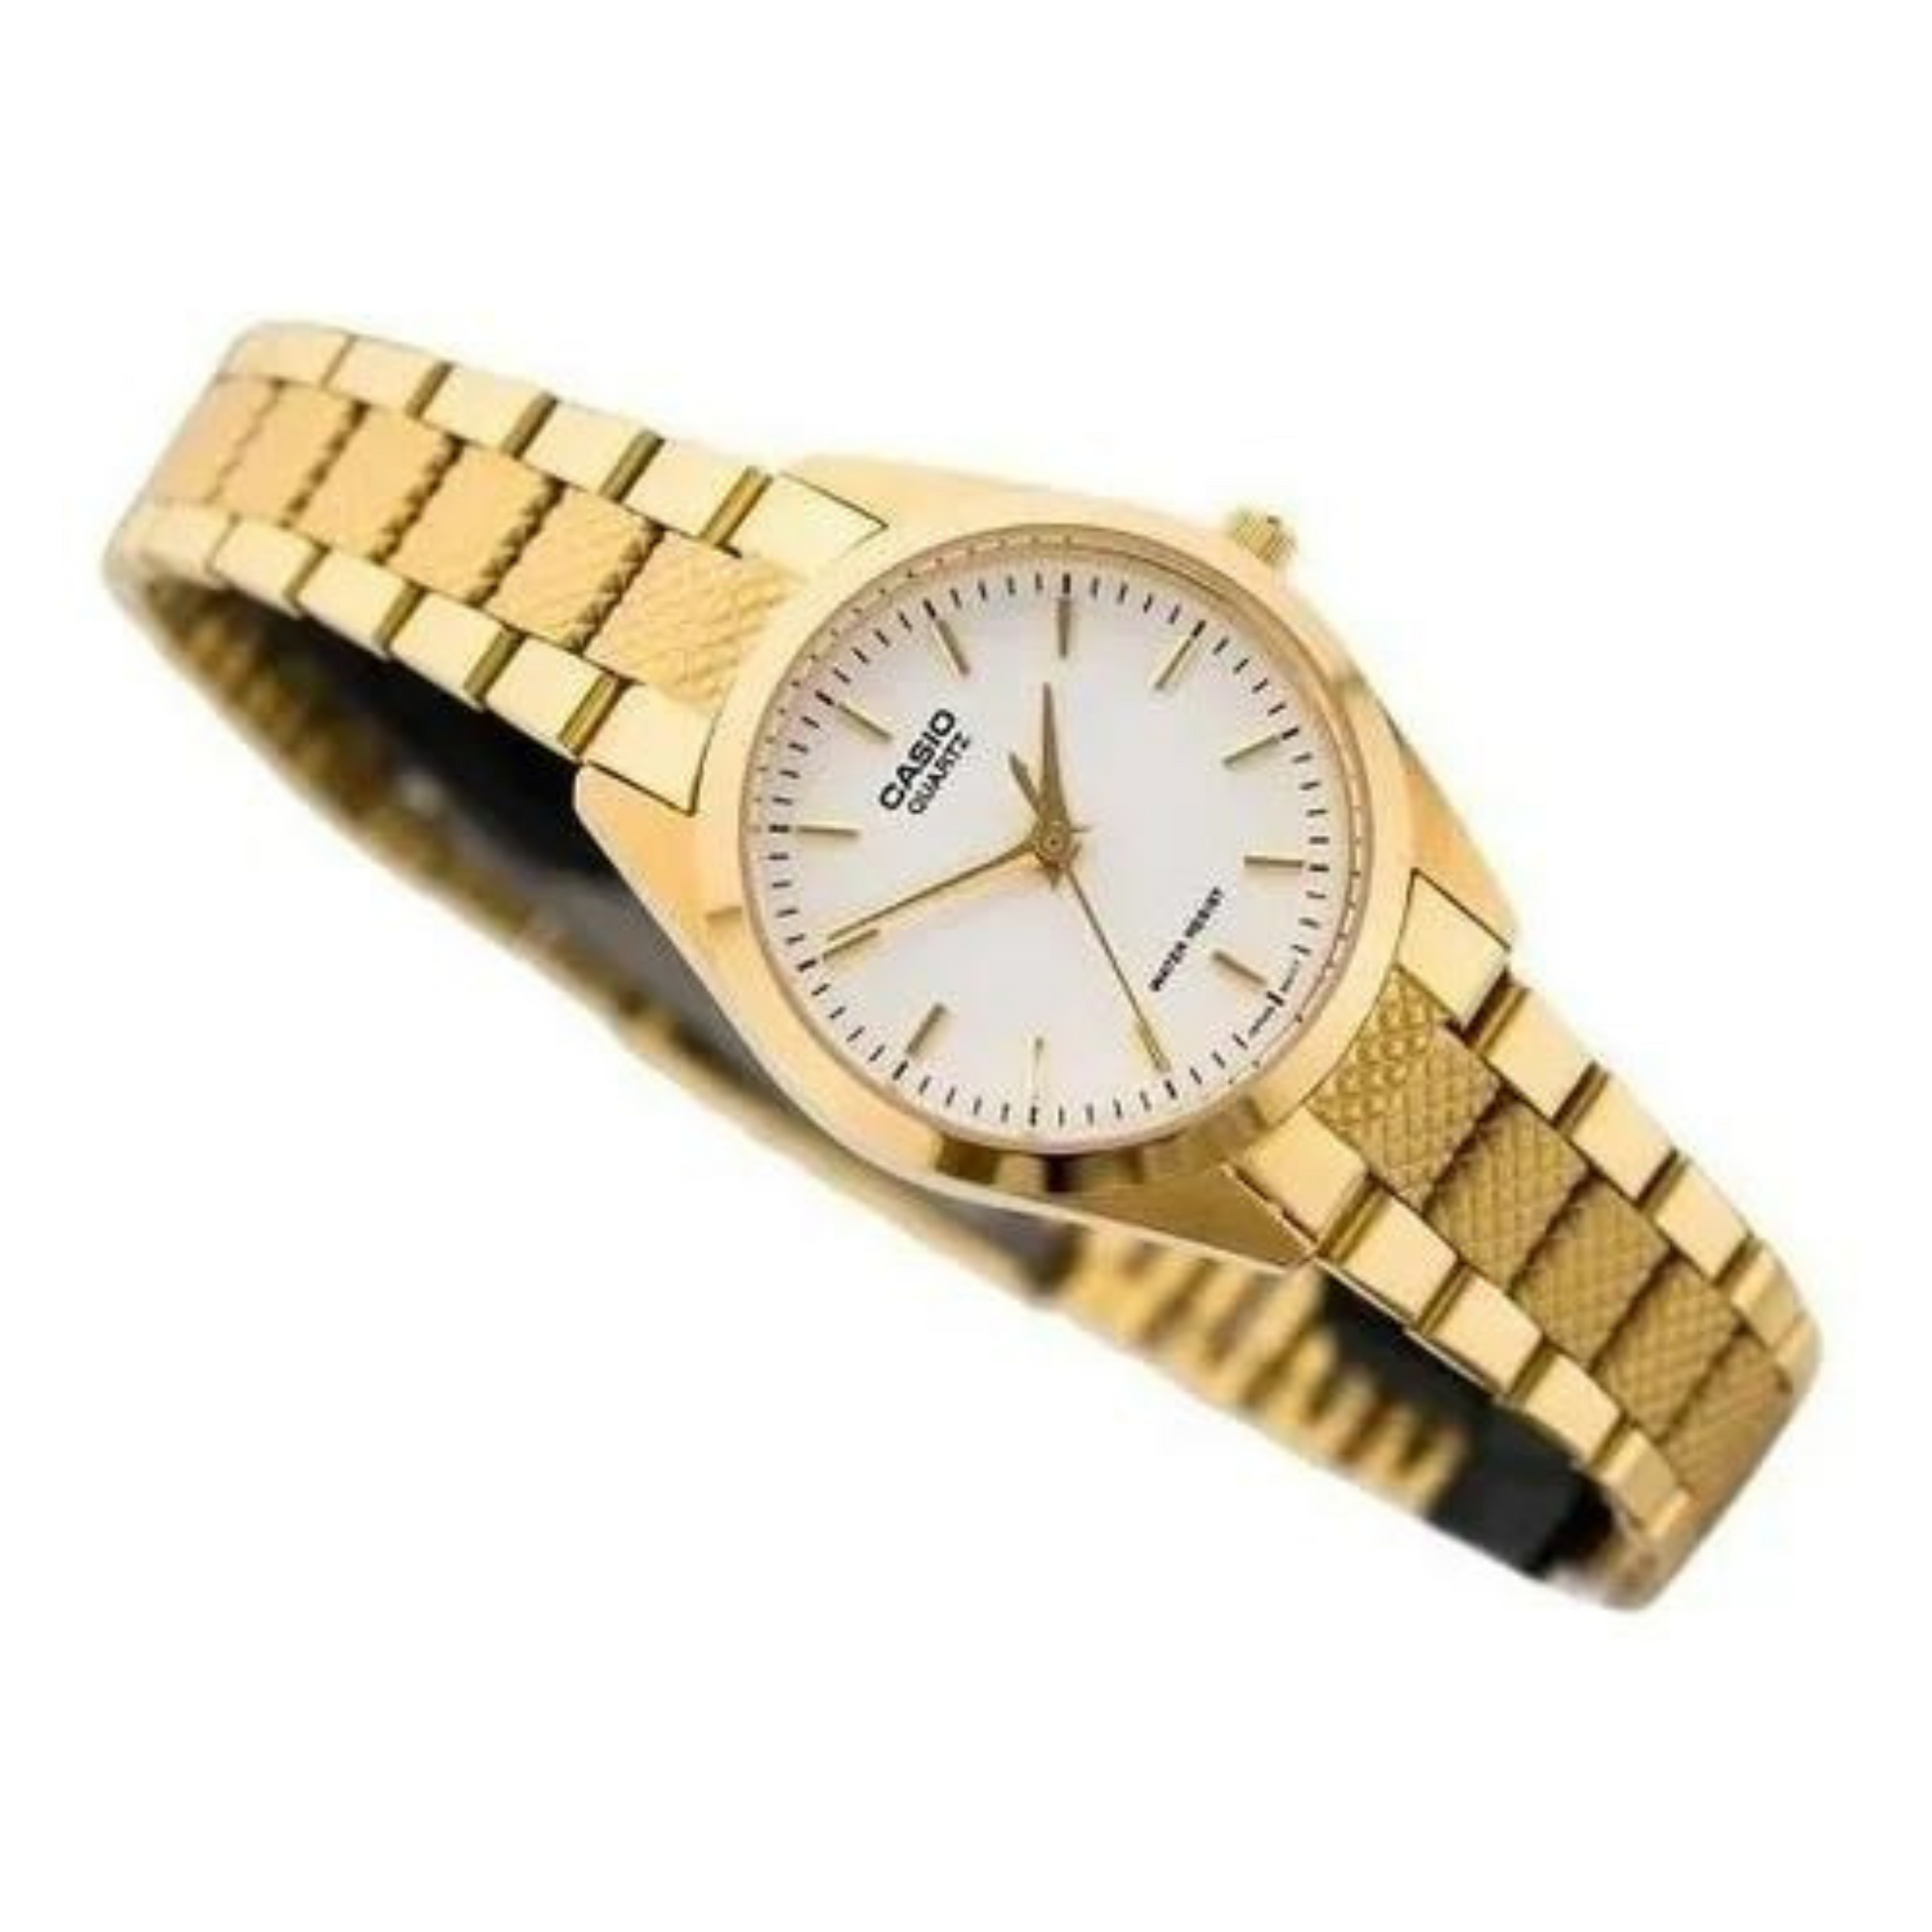 Reloj Casio LTP-1274G dorado para dama